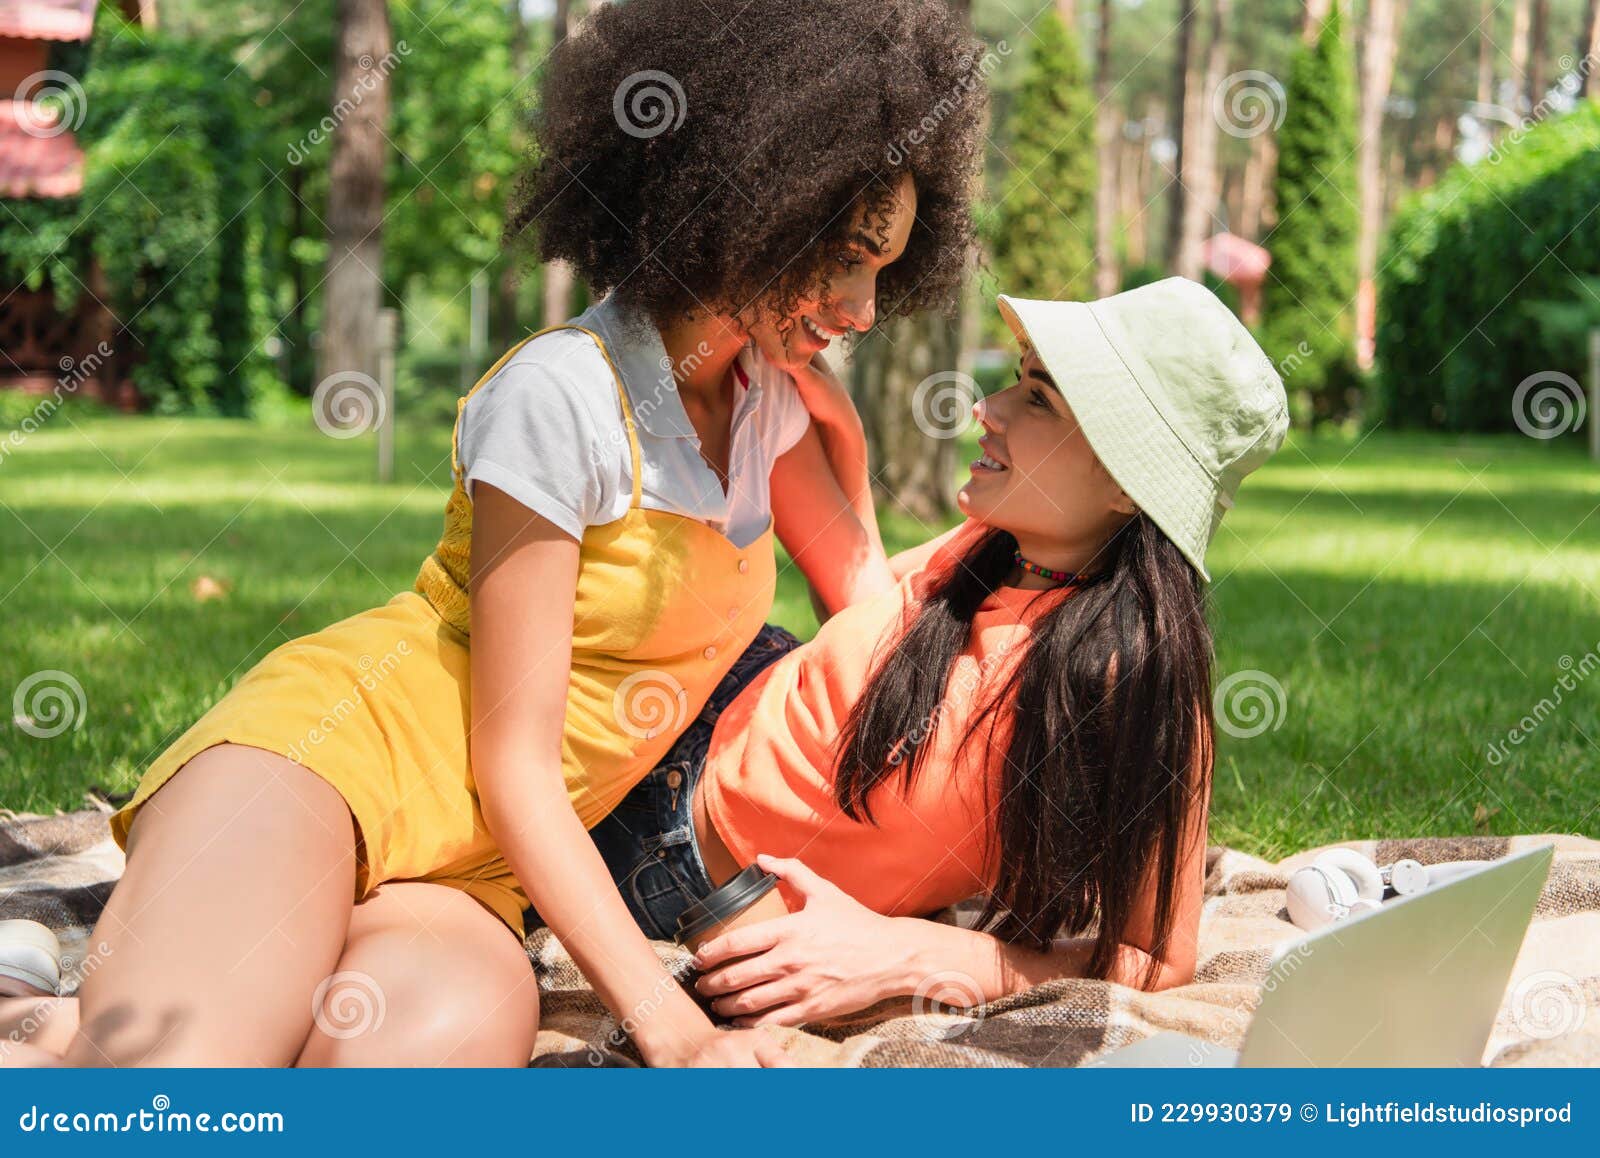 Lesbian Interracial Pics